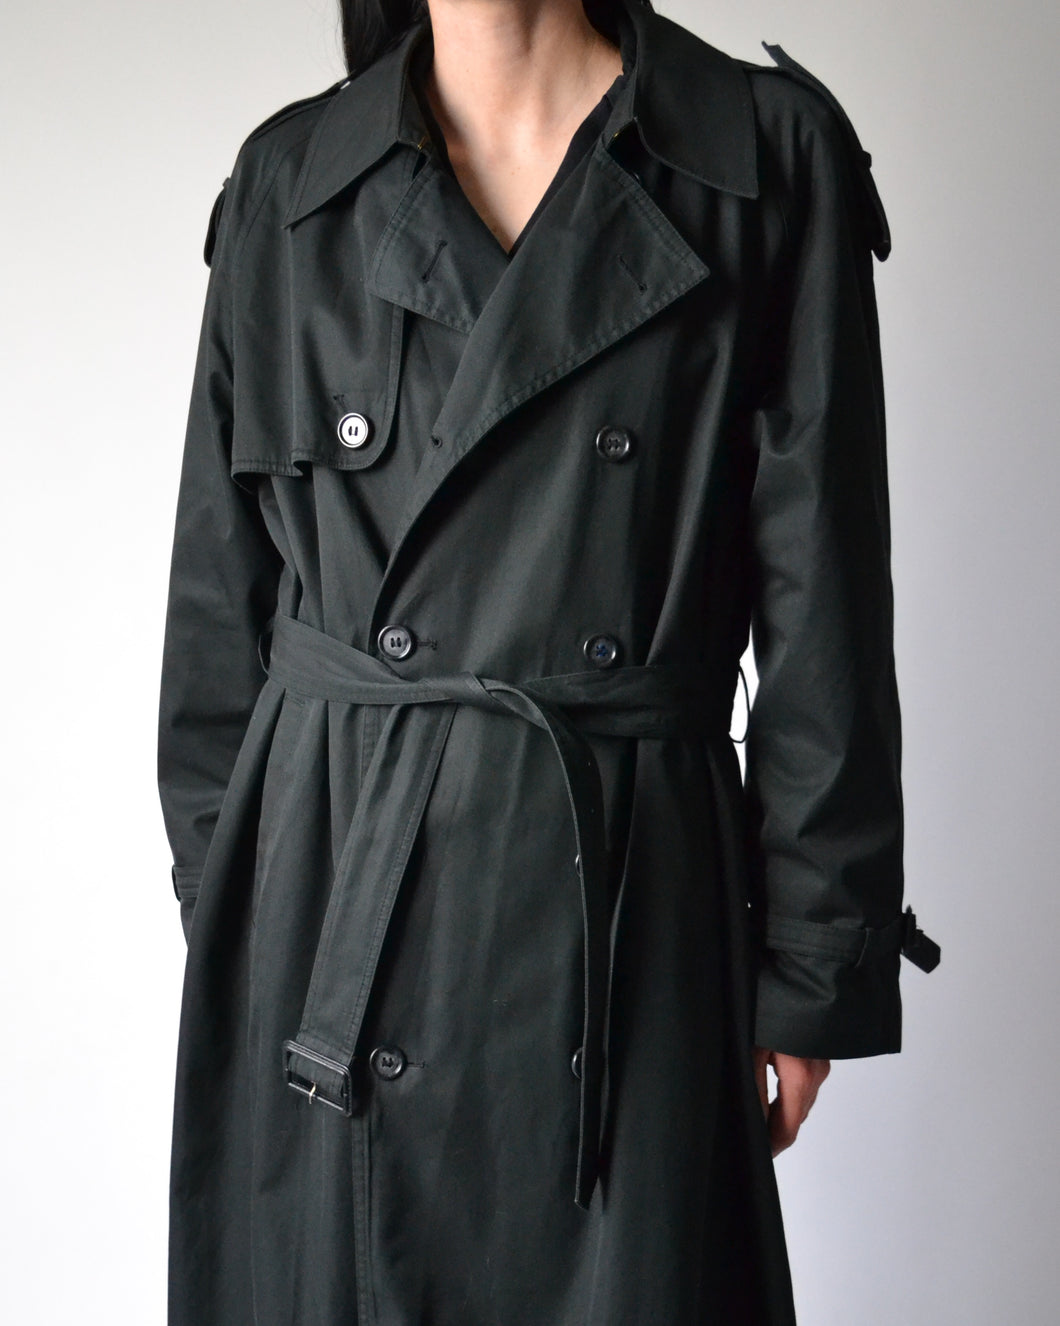 Black Yves Saint Laurent Trench Coat